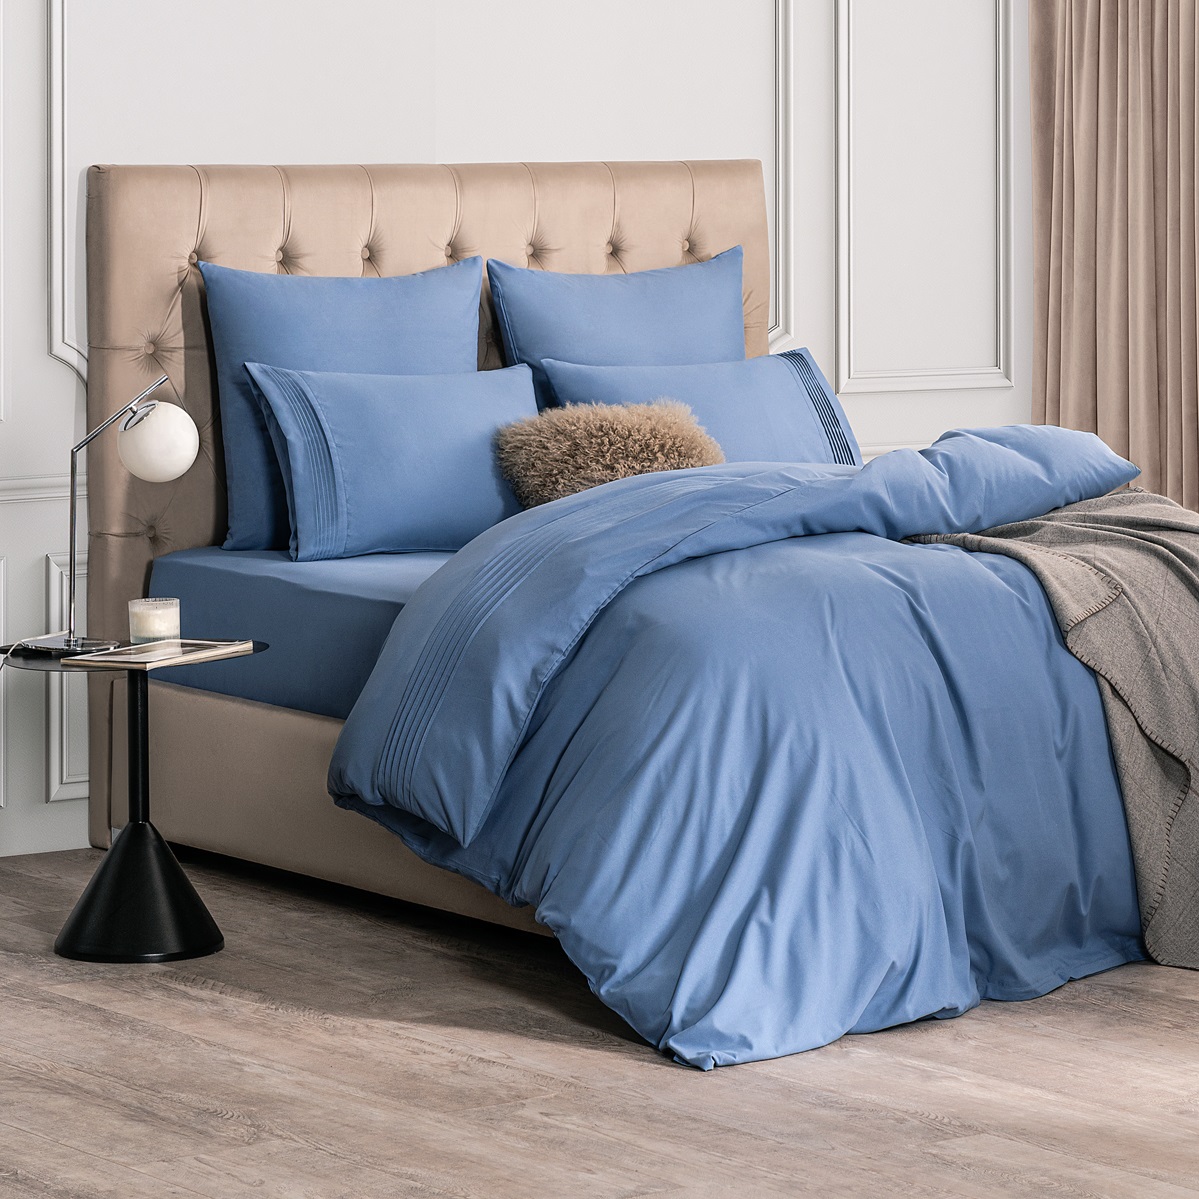 Комплект постельного белья Sleepix Миоко синий Полуторный, размер Полуторный - фото 2